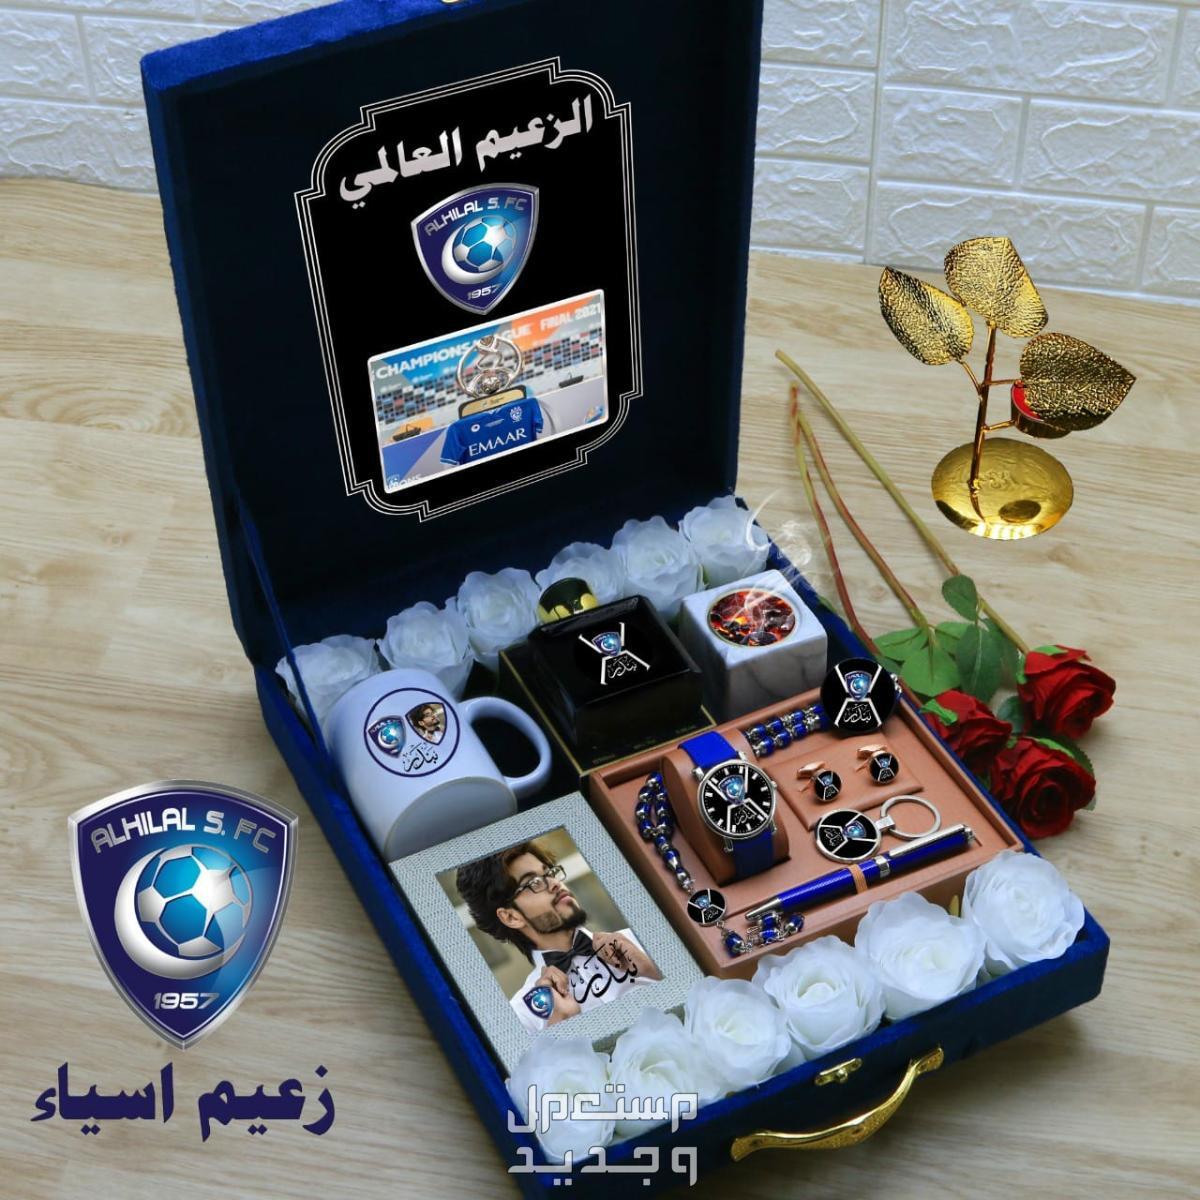 لعشاق نادي الهلال ساعة بشعار نادي الهلال مع اكمسورات باسمك